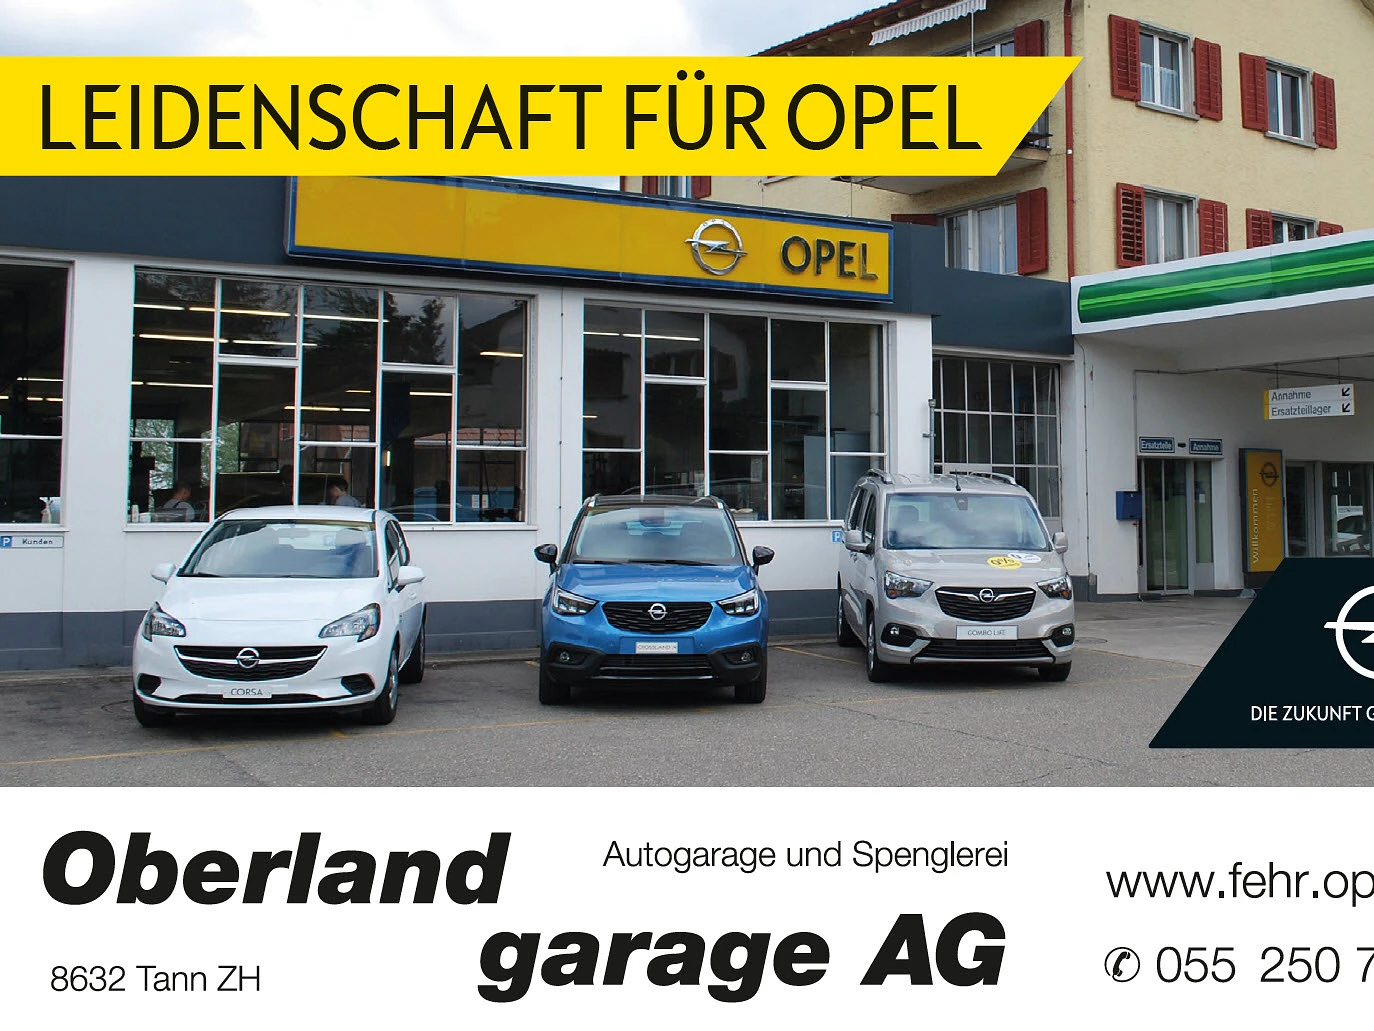 Bruno Fehr Oberland-Garage AG